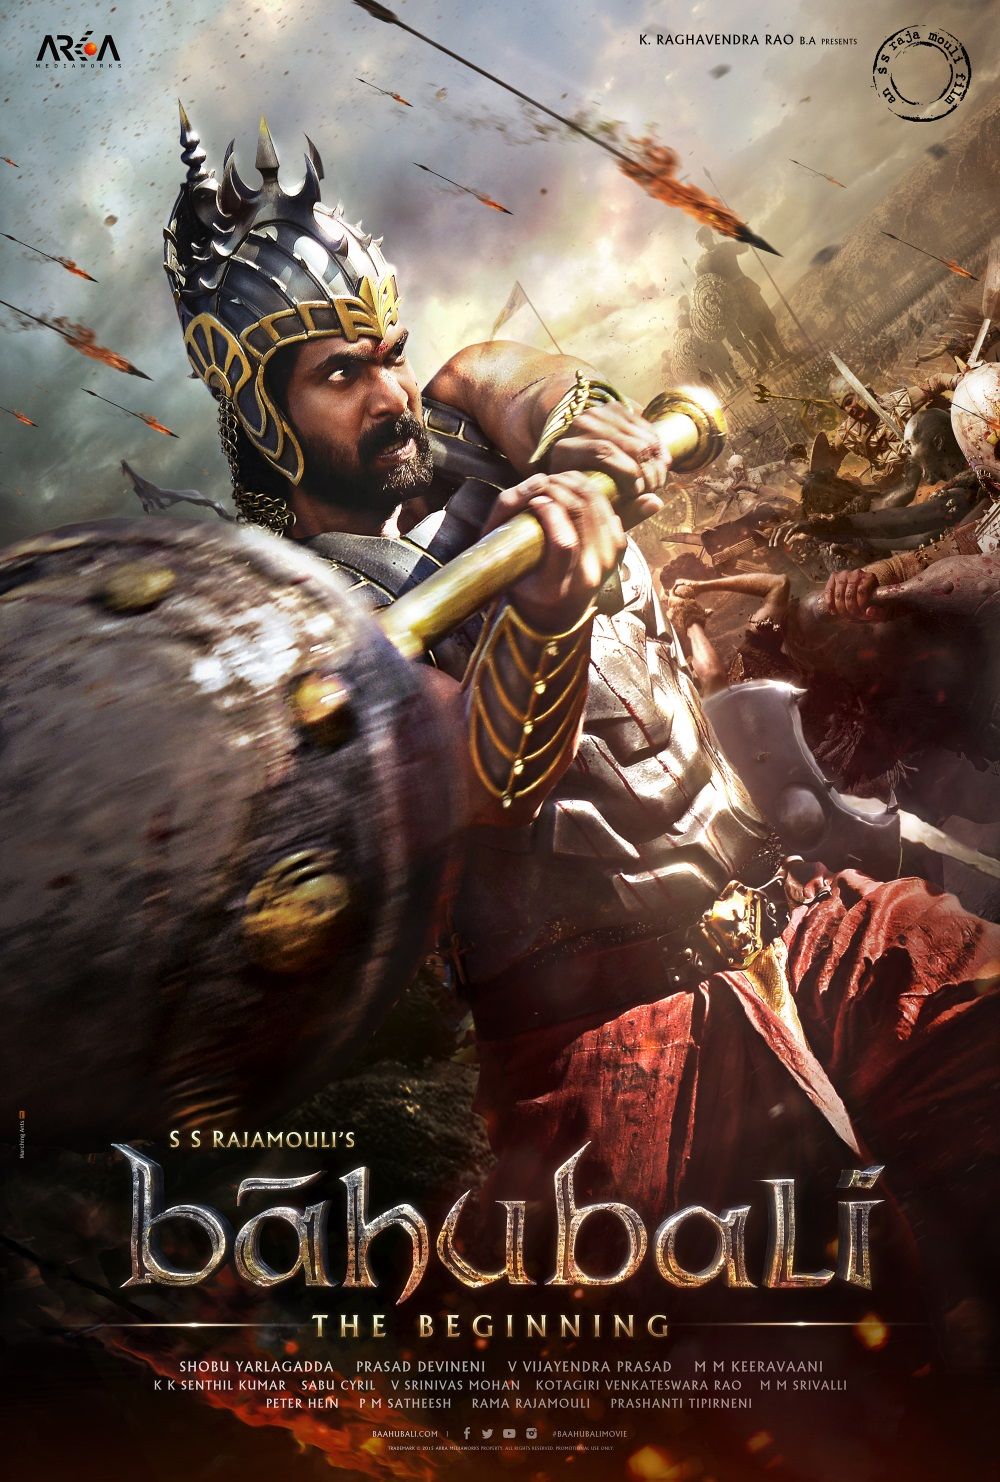 ดูหนังออนไลน์ฟรี Bahubali The Beginning (2015) เปิดตำนานบาฮูบาลี